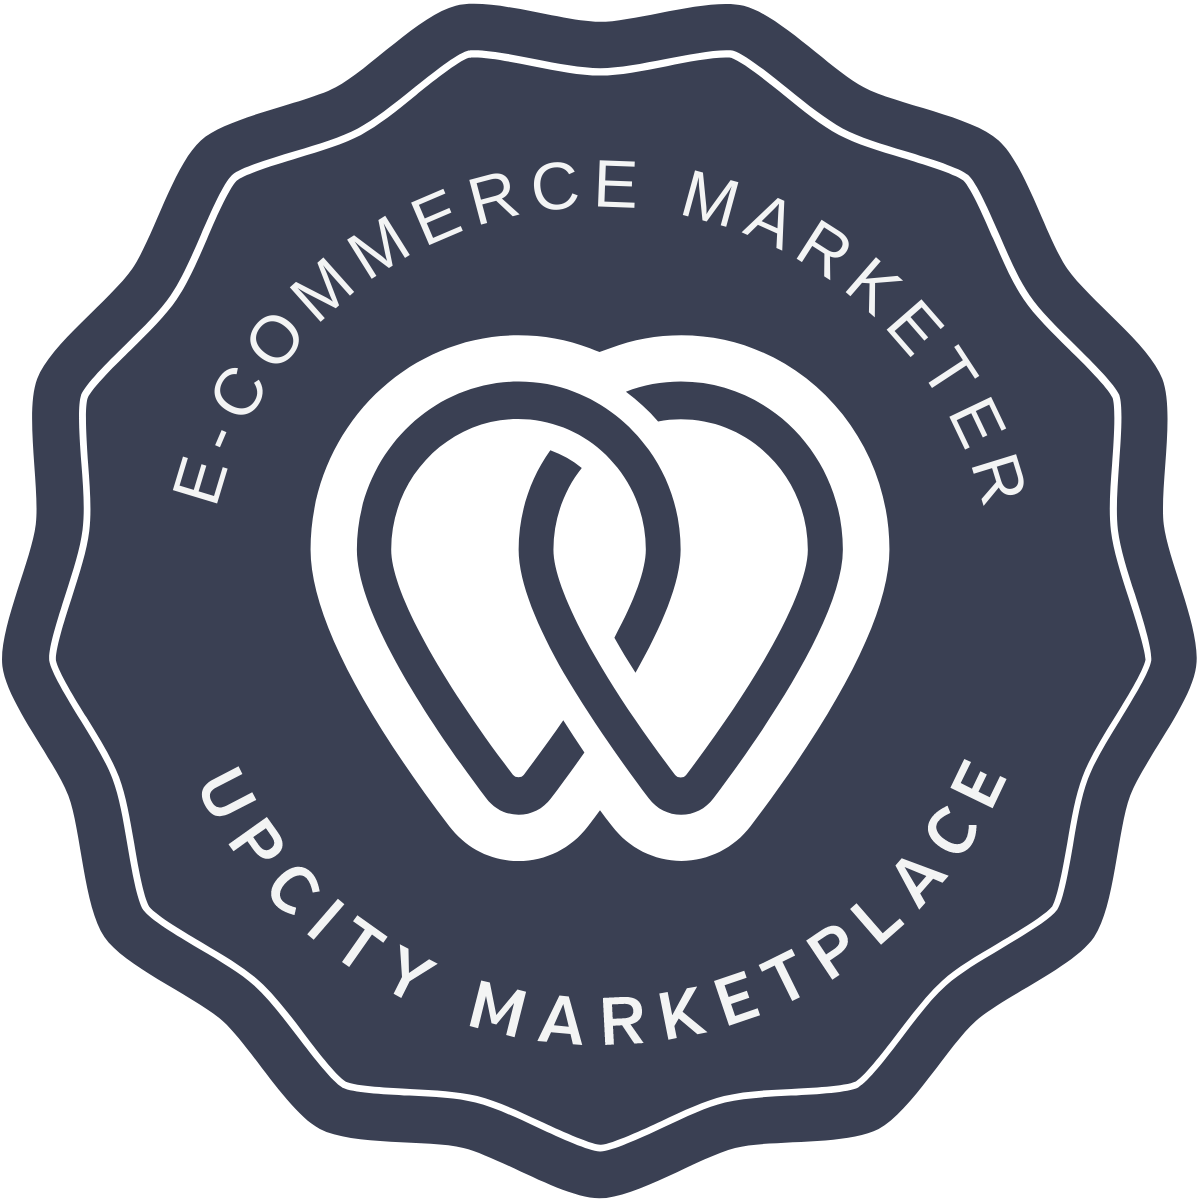 E-commerce Marketer Upcity Marketplace